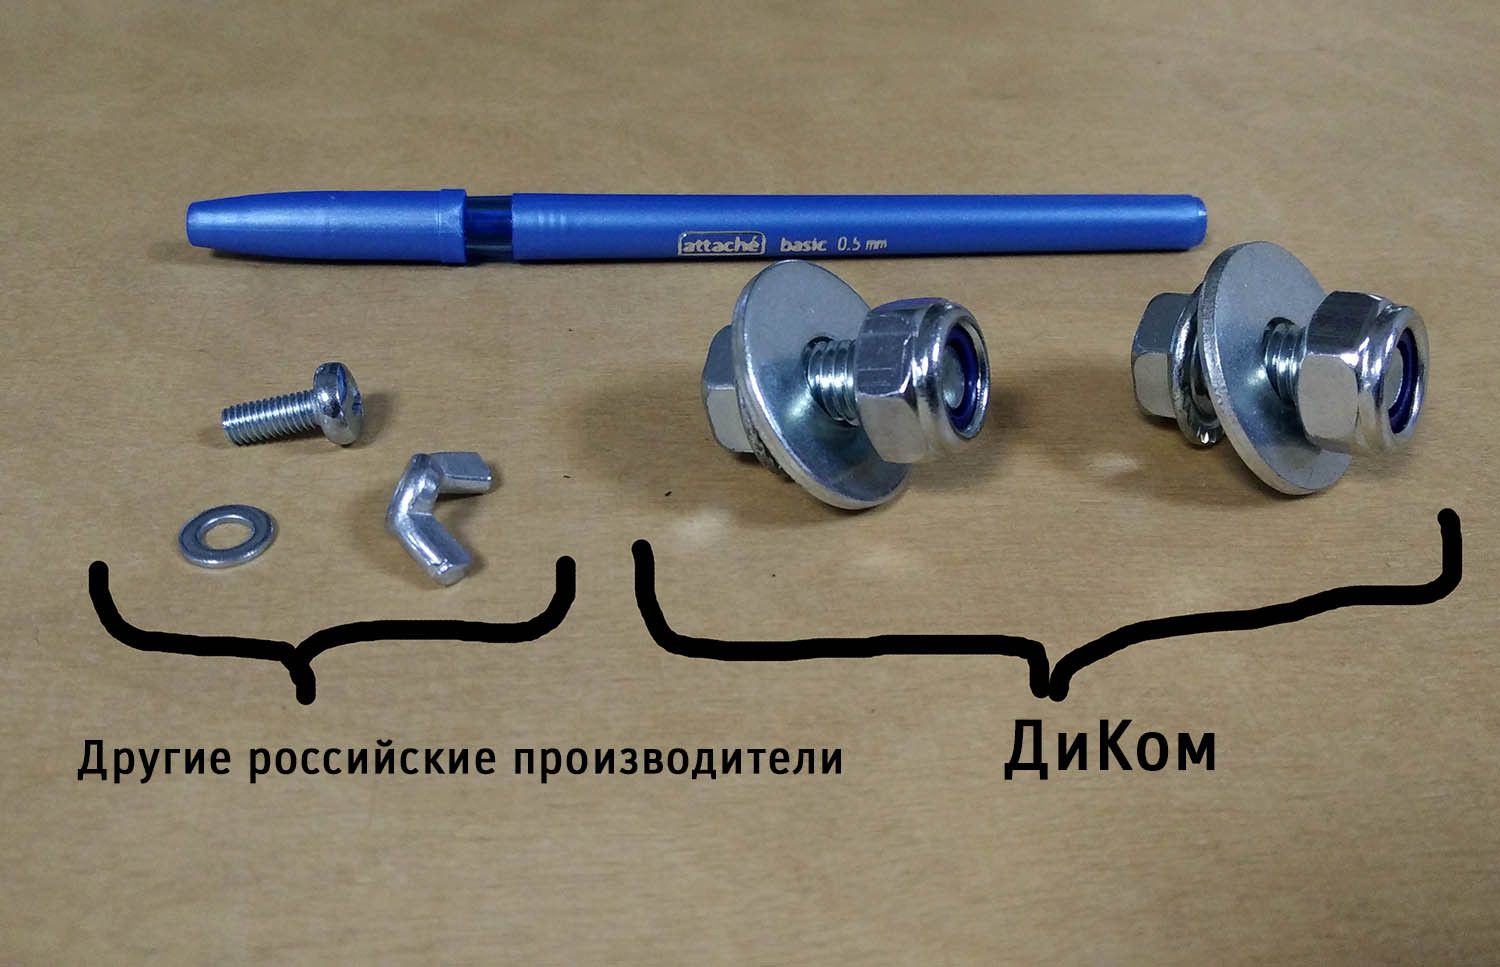 Справа — метизы верстаков ДиКом (самоконтрящиеся гайки), слева — метизы верстаков других российских производителей